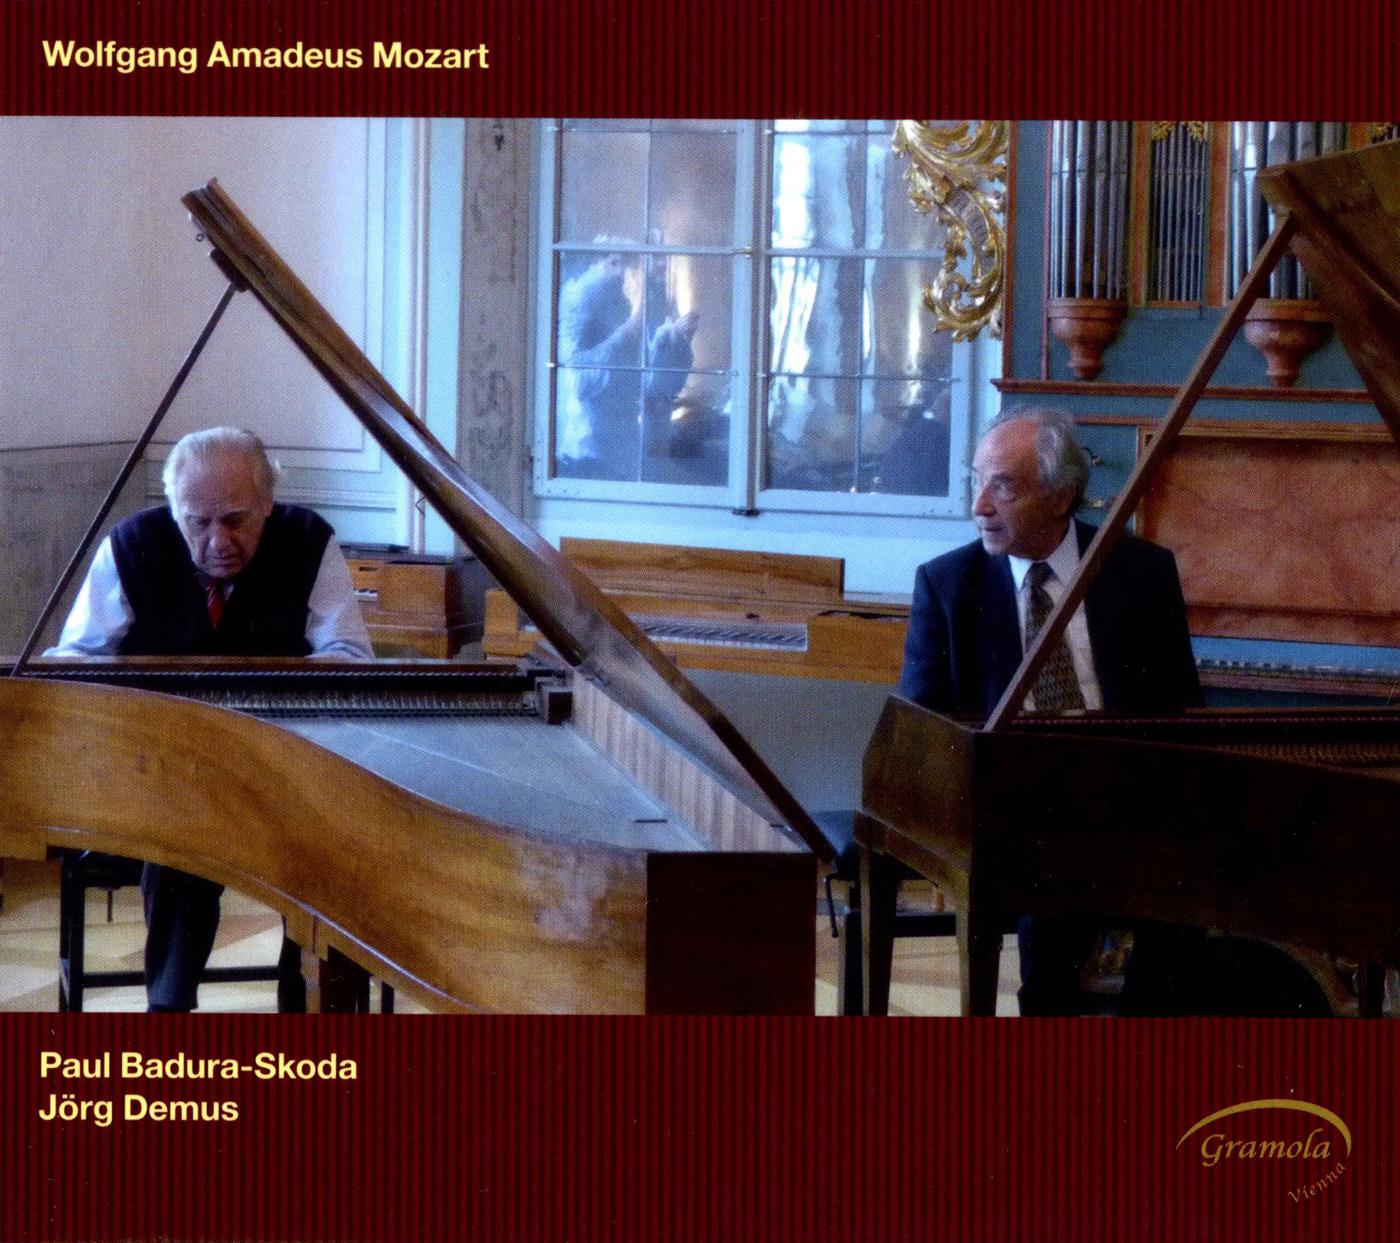 Sonata for 2 Pianos in D Major, K. 448: I. Allegro con spirito